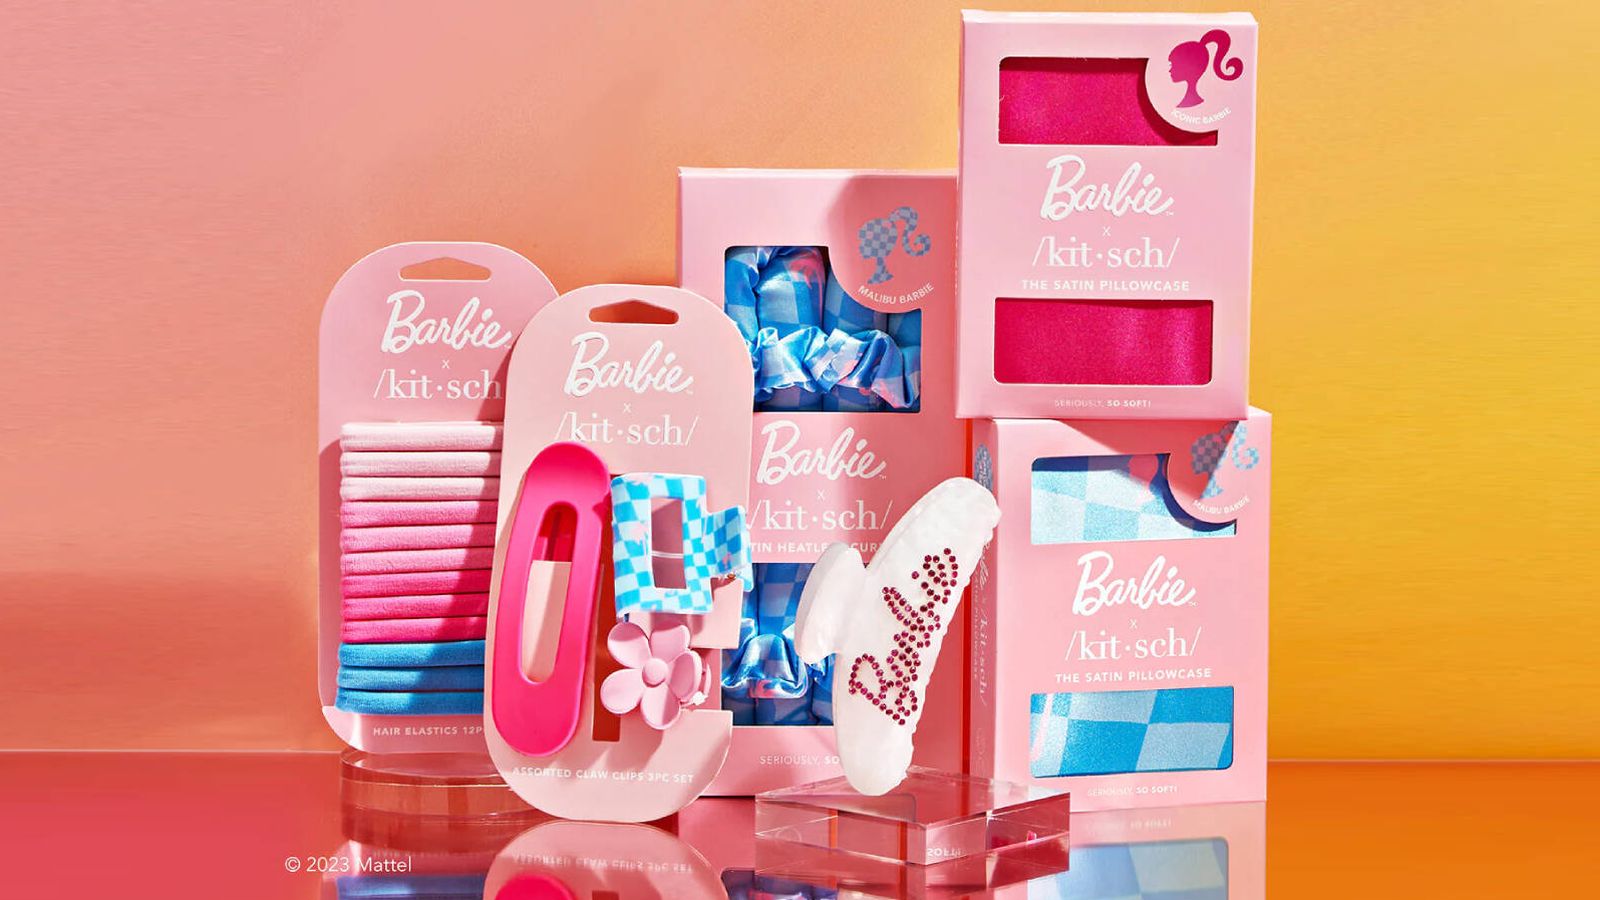 Colección al completo de Barbie x Kitsch. (Crotesía)